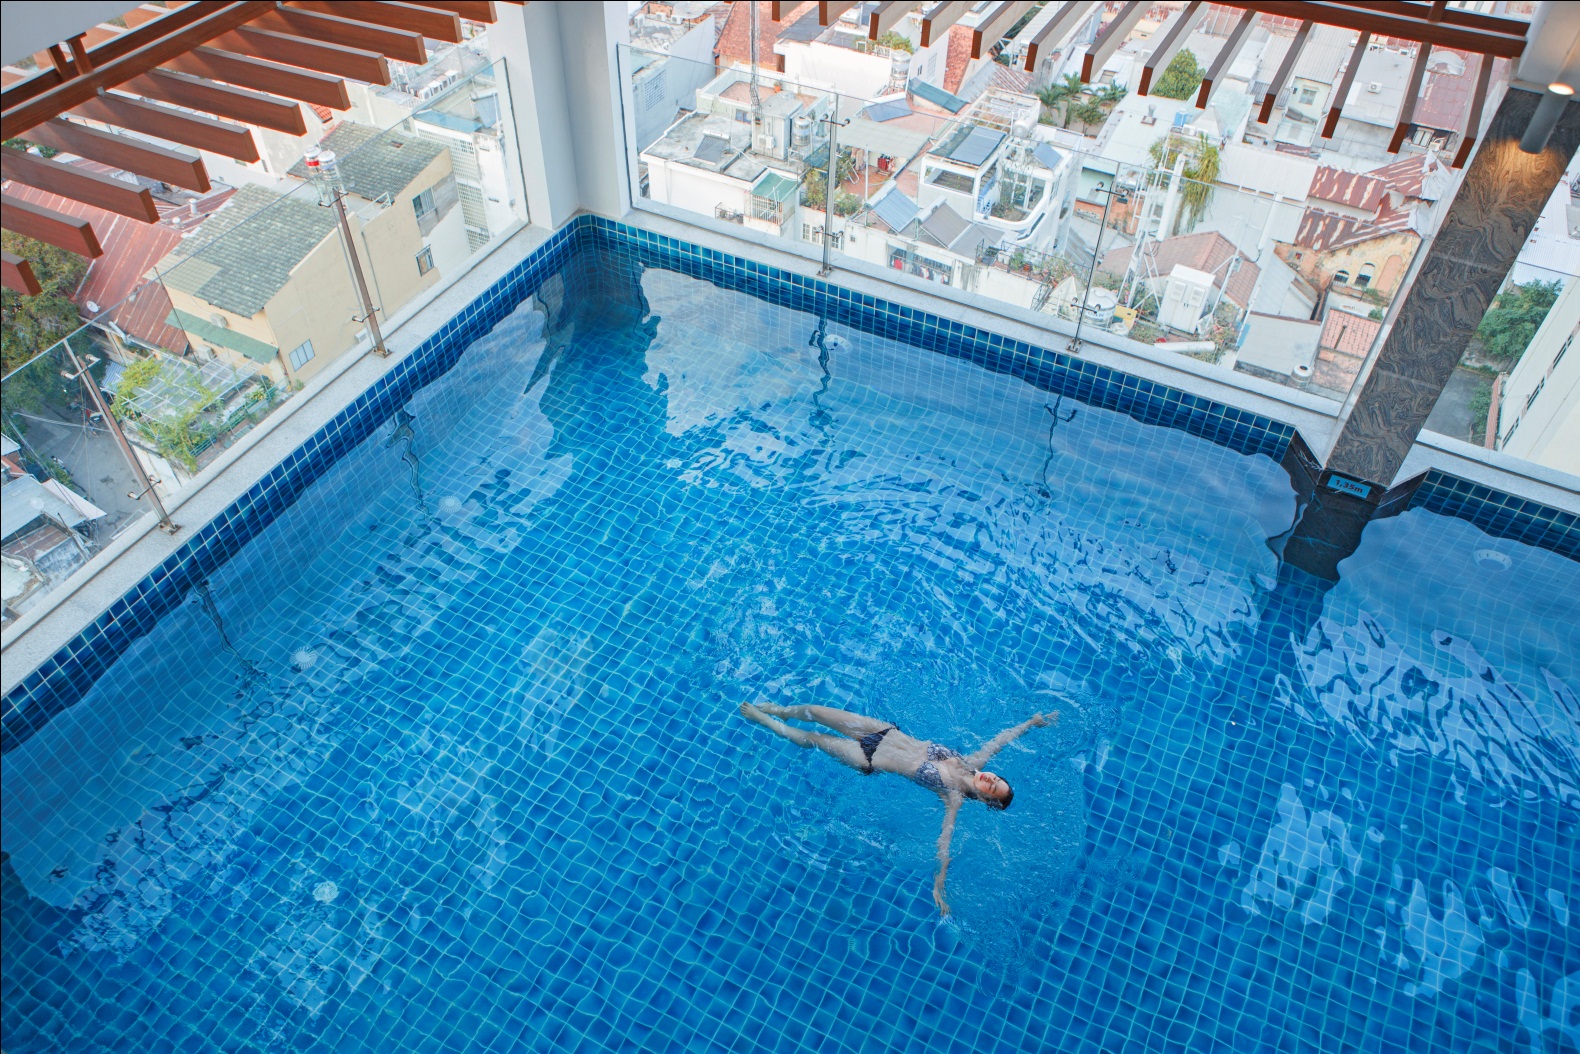 Vui trọn mùa hè với ưu đãi lên đến 70% tại khách sạn Mường Thanh - Ảnh 4.